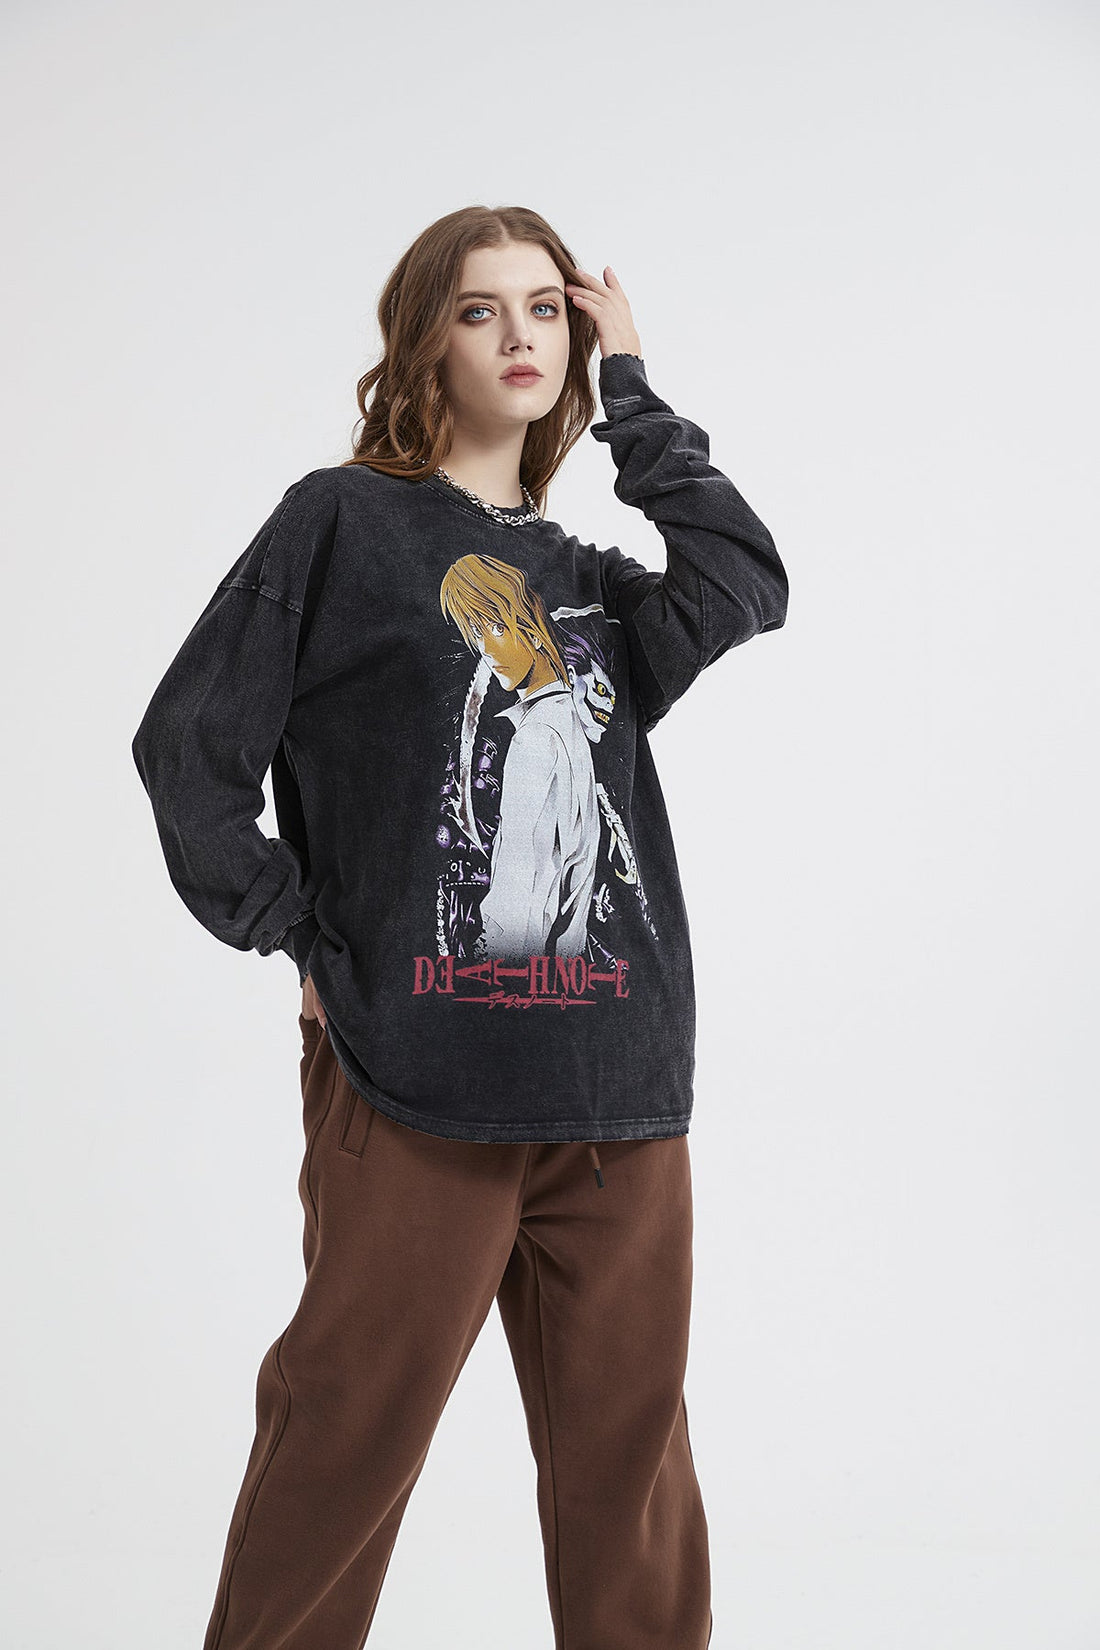 Death Note Print Women Long Sleeve T-Shirt